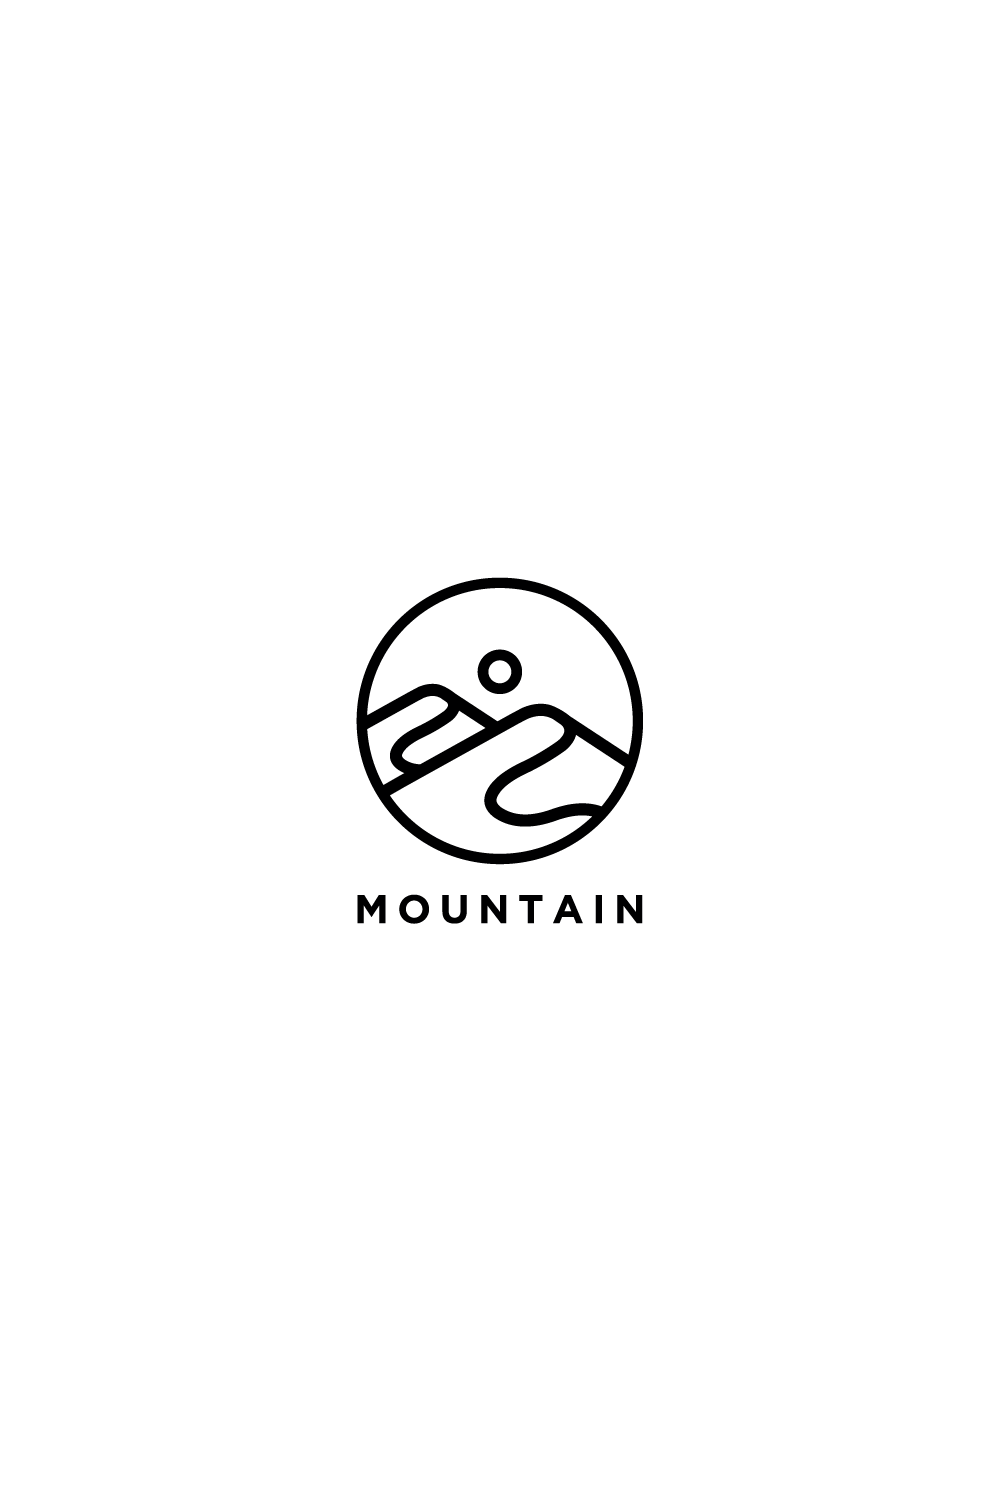 mountain logo design vector template pinterest preview image.